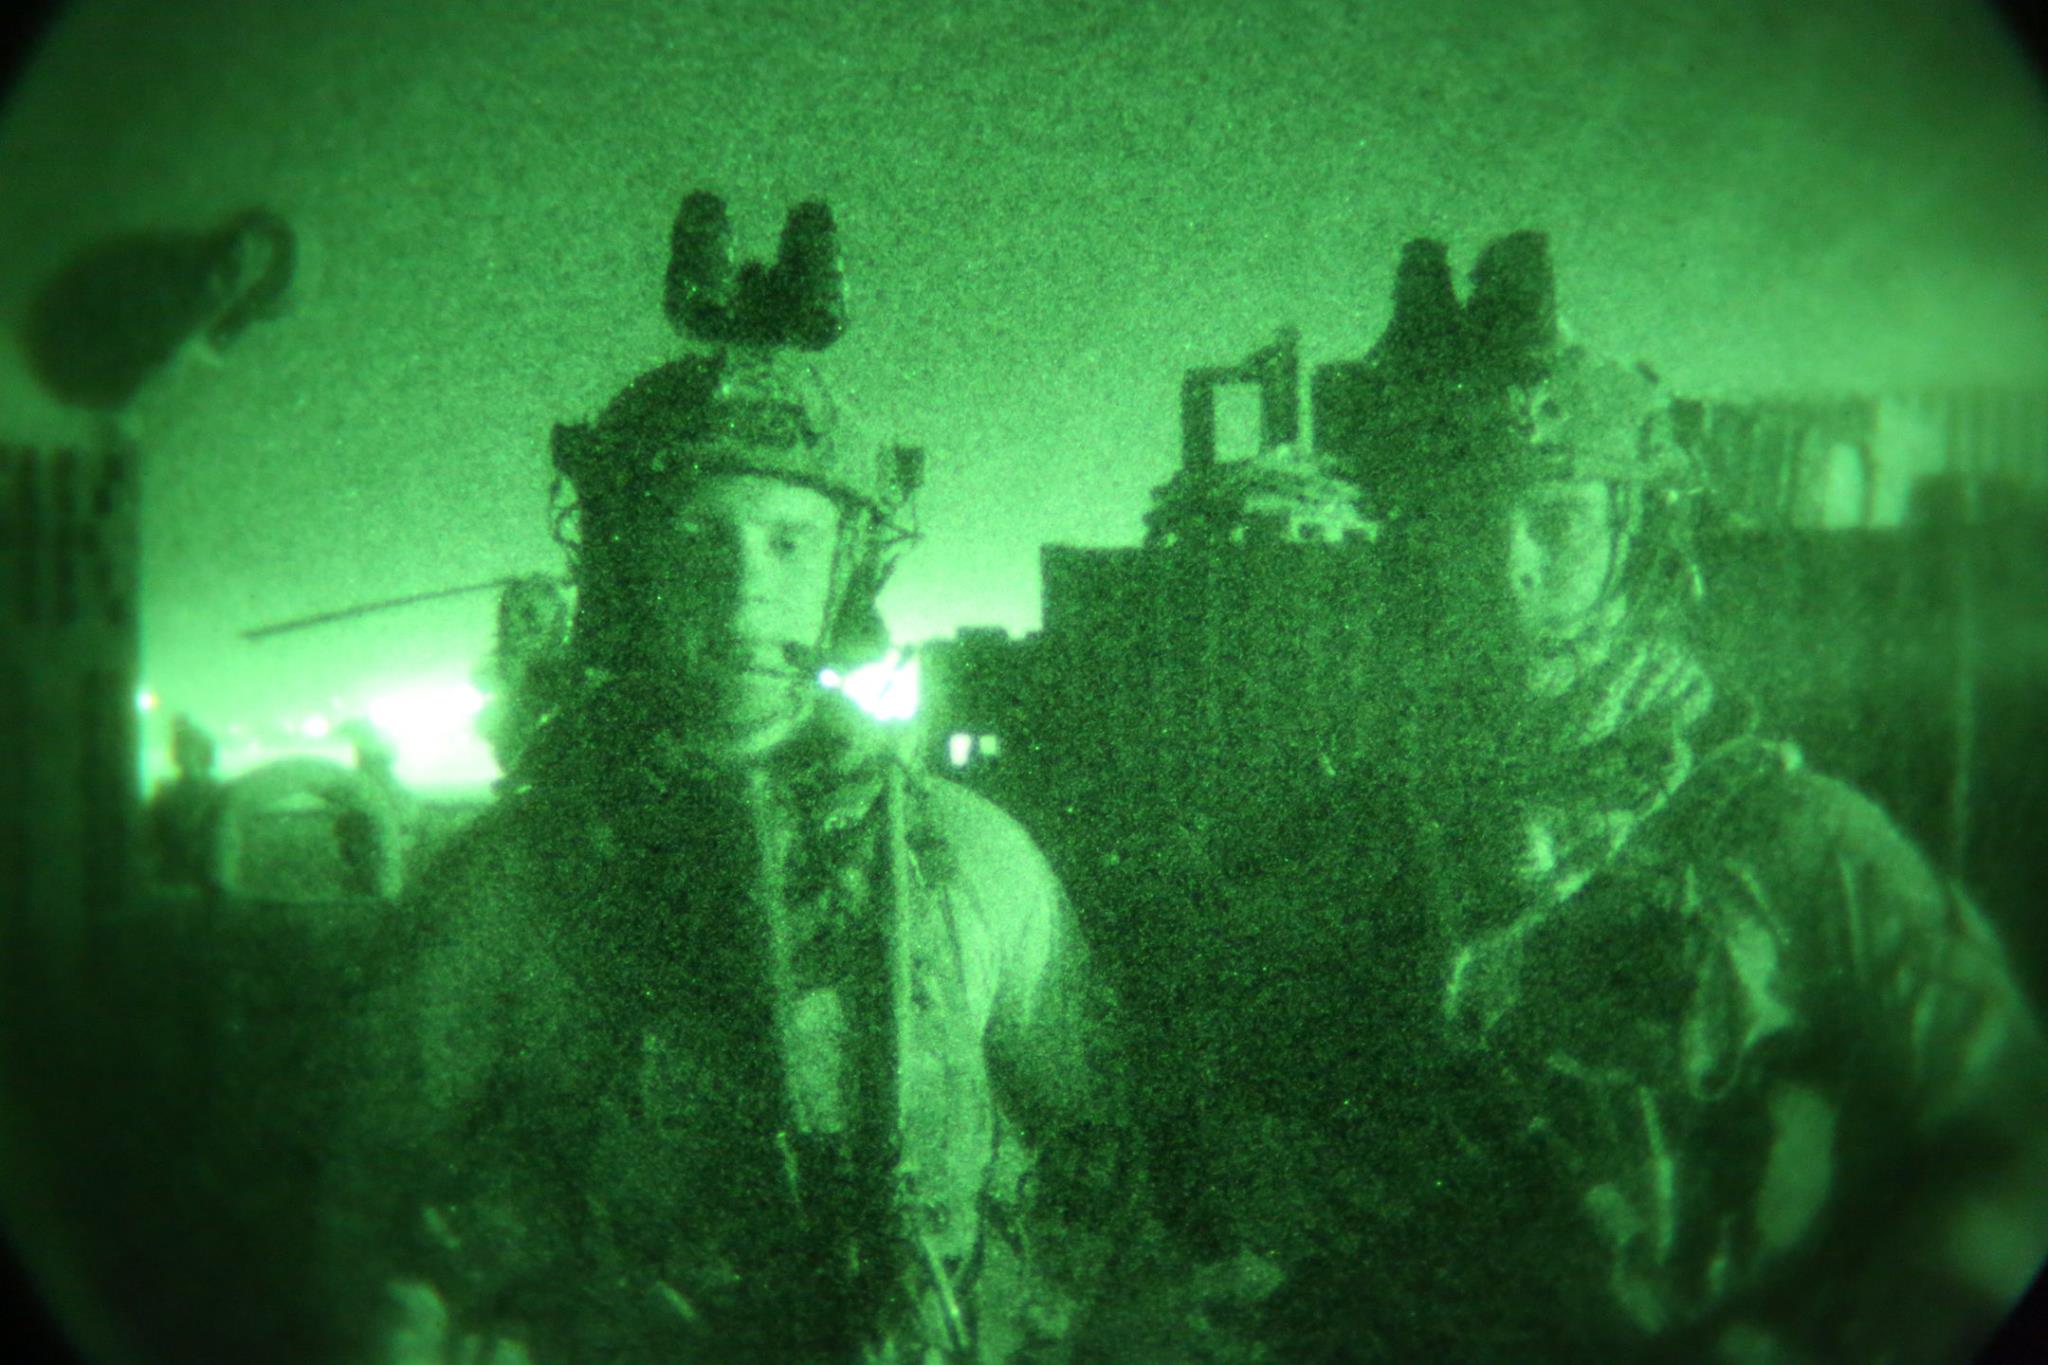 Luke Ryan and Patrick Hawkins as gun team leaders in Afghanistan.